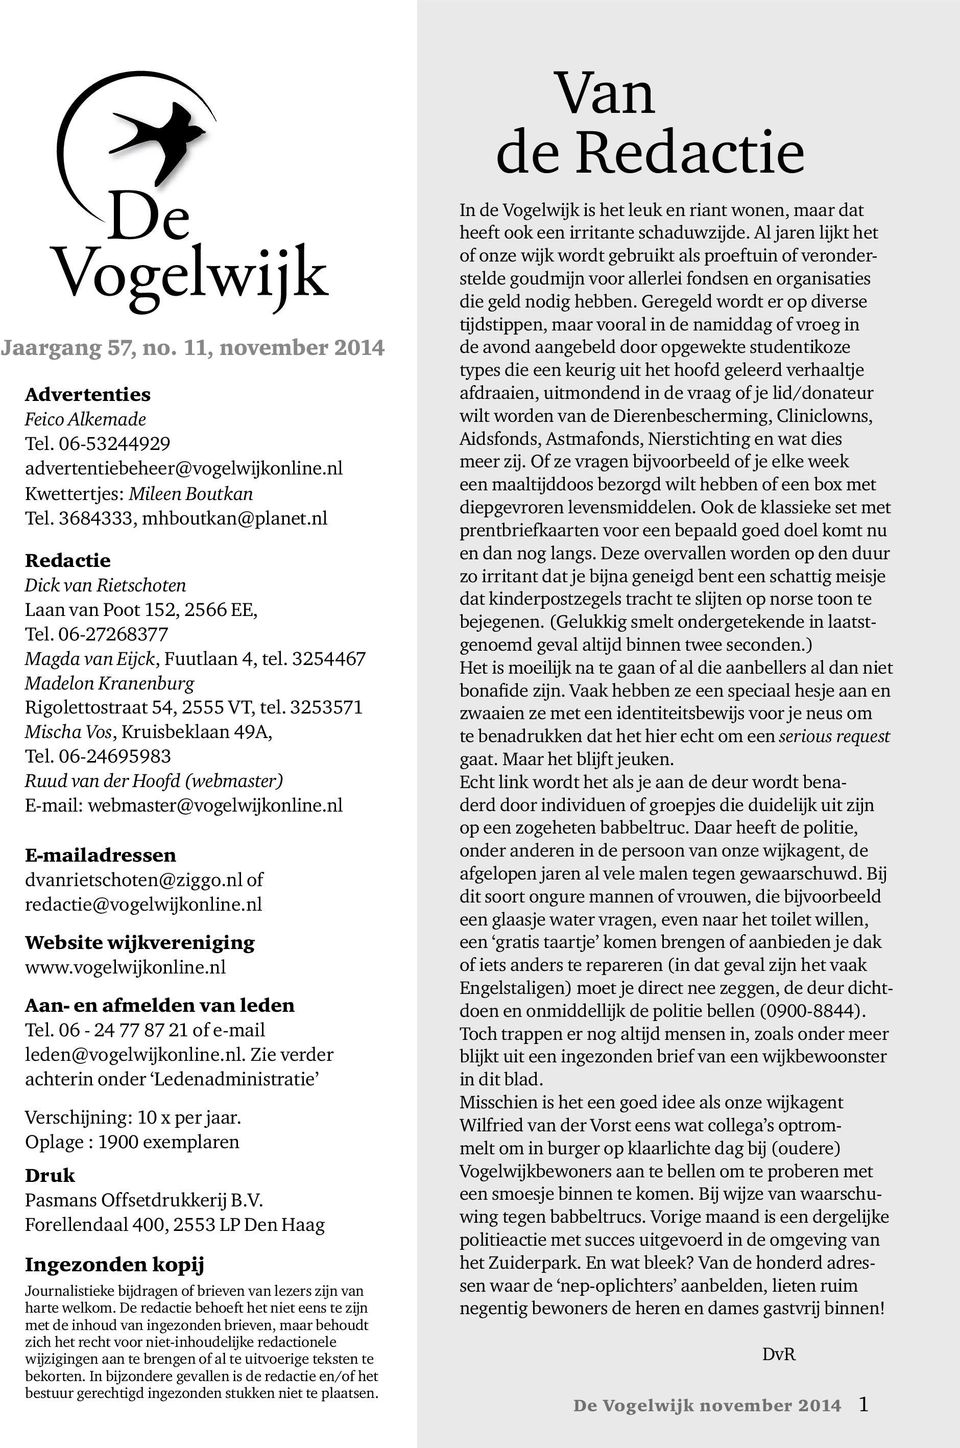 3253571 Mischa Vos, Kruisbeklaan 49A, Tel. 06-24695983 Ruud van der Hoofd (webmaster) E-mail: webmaster@vogelwijkonline.nl E-mailadressen dvanrietschoten@ziggo.nl of redactie@vogelwijkonline.